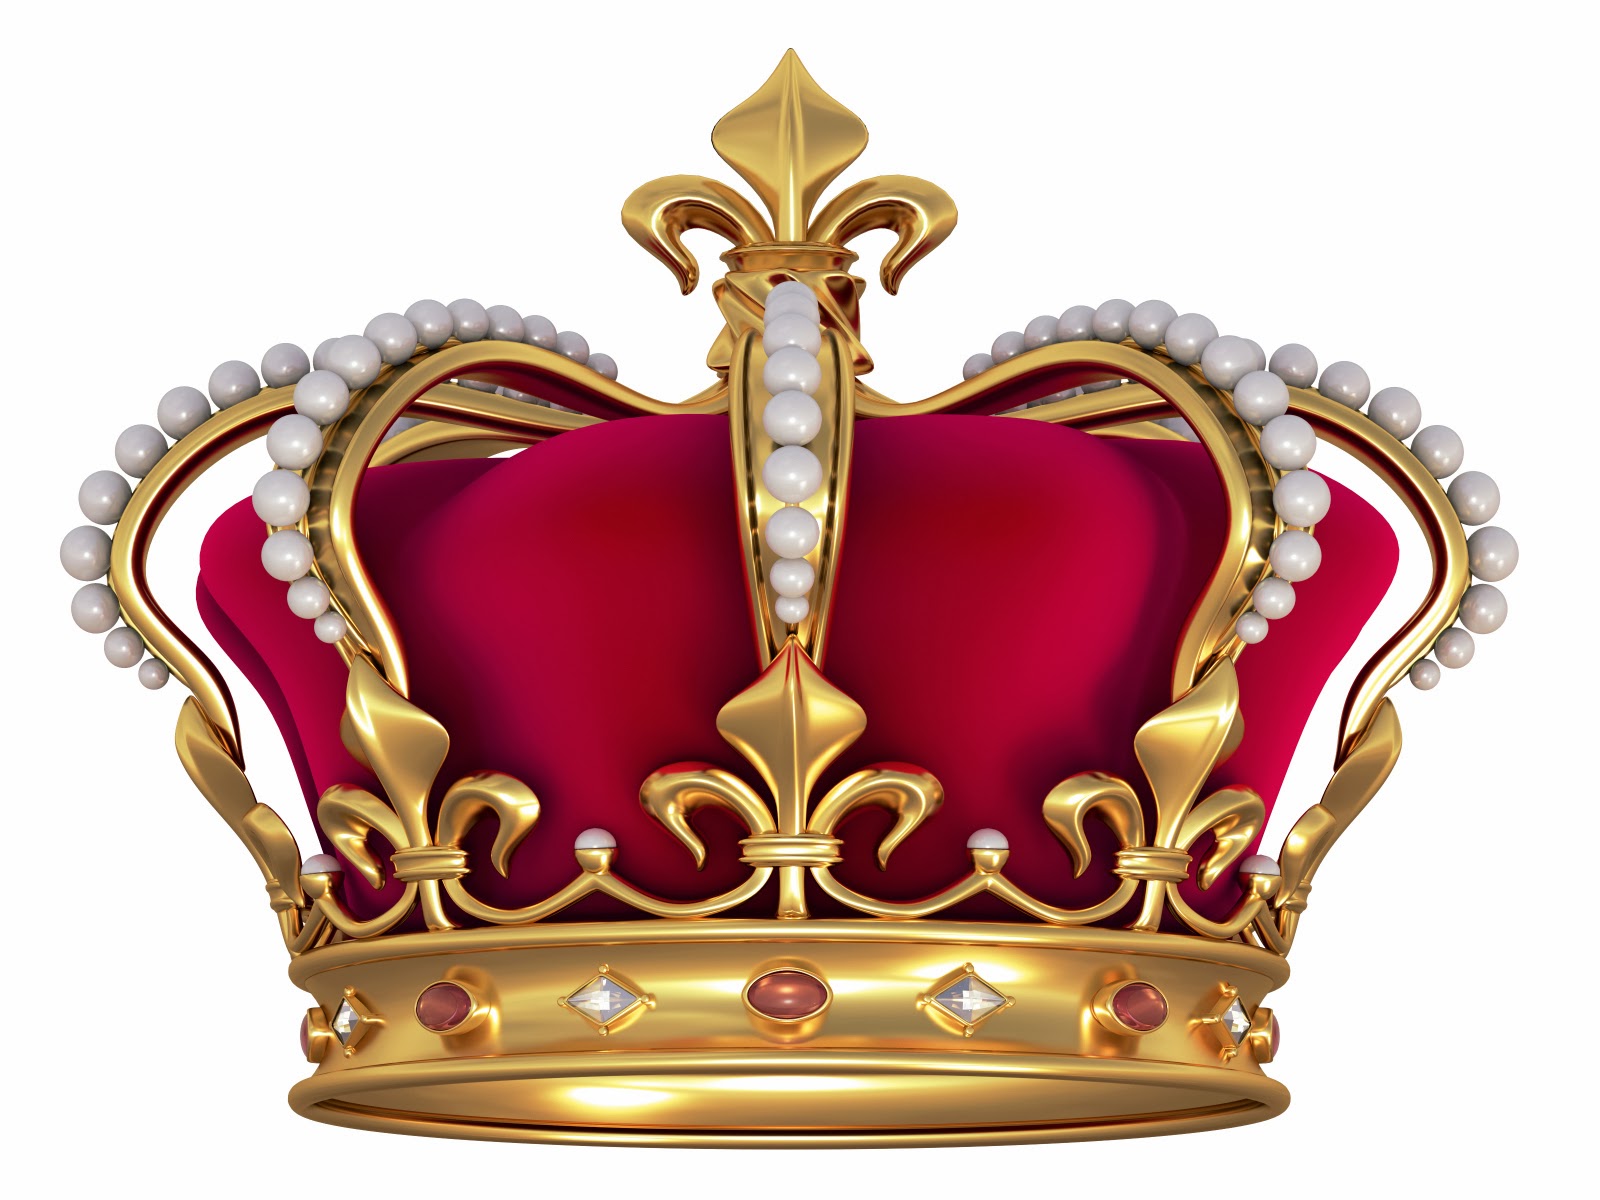 Free Cartoon King Crown, Download Free Cartoon King Crown png images